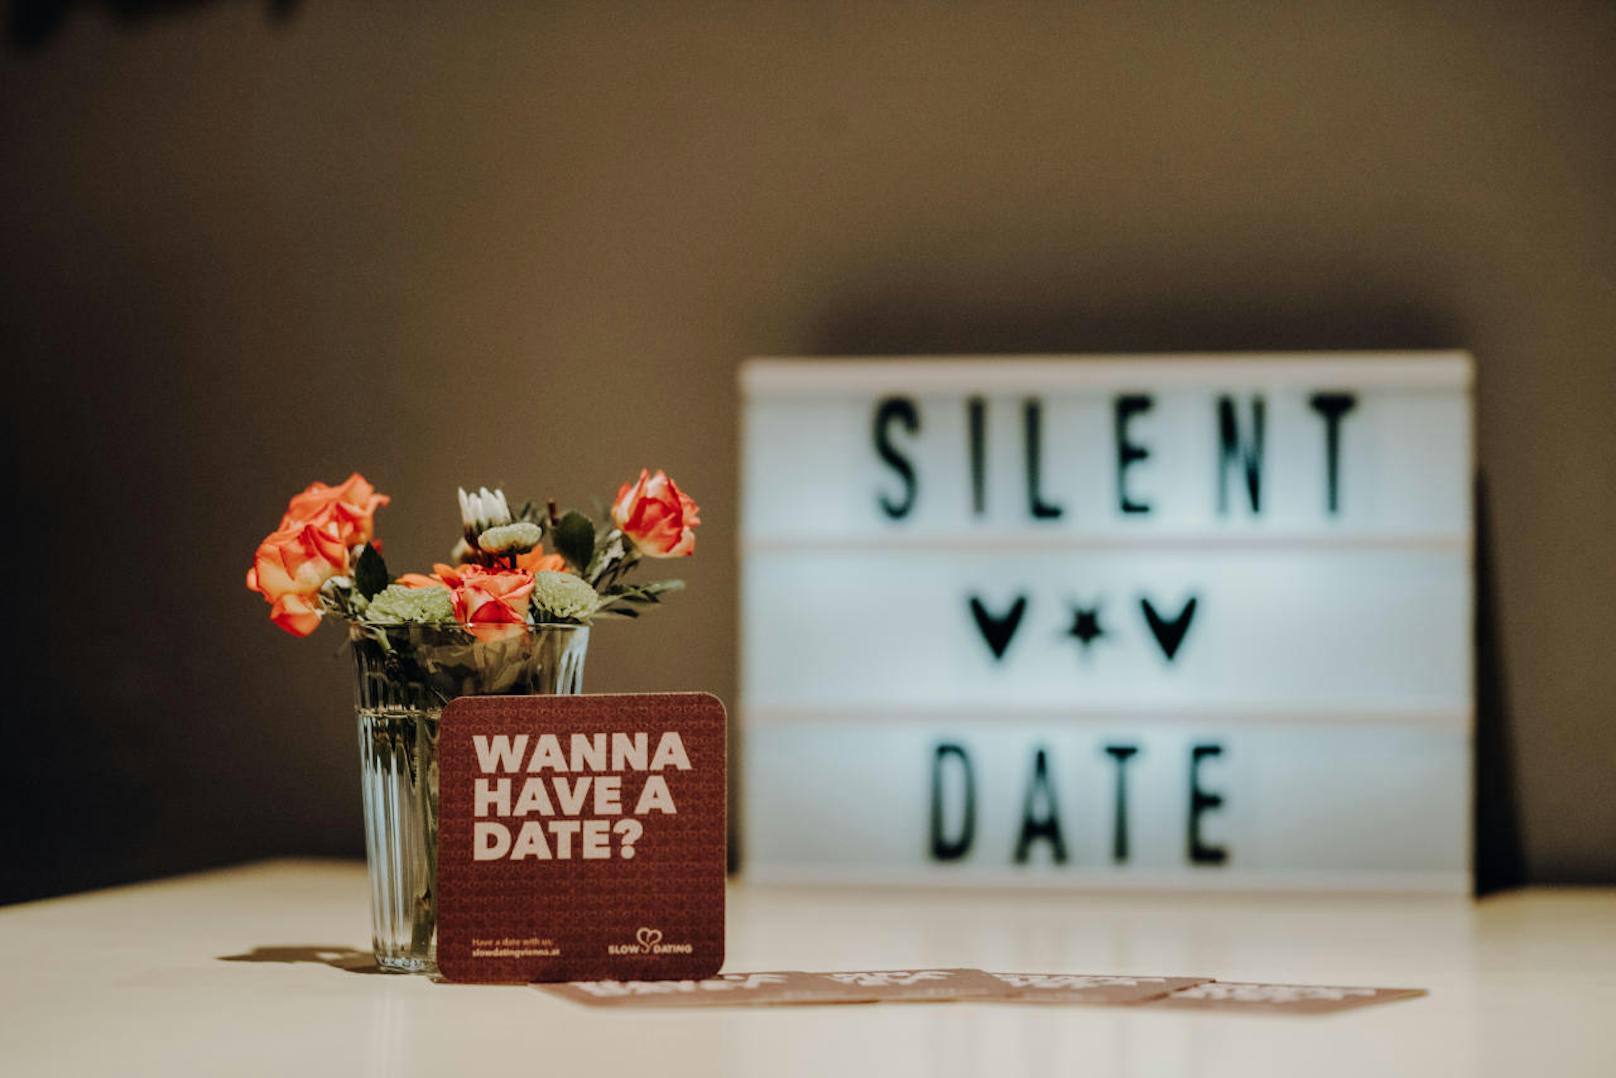 Silent Dating Event: Jetzt teilnehmen & Platz am Valentinstag gewinnen.